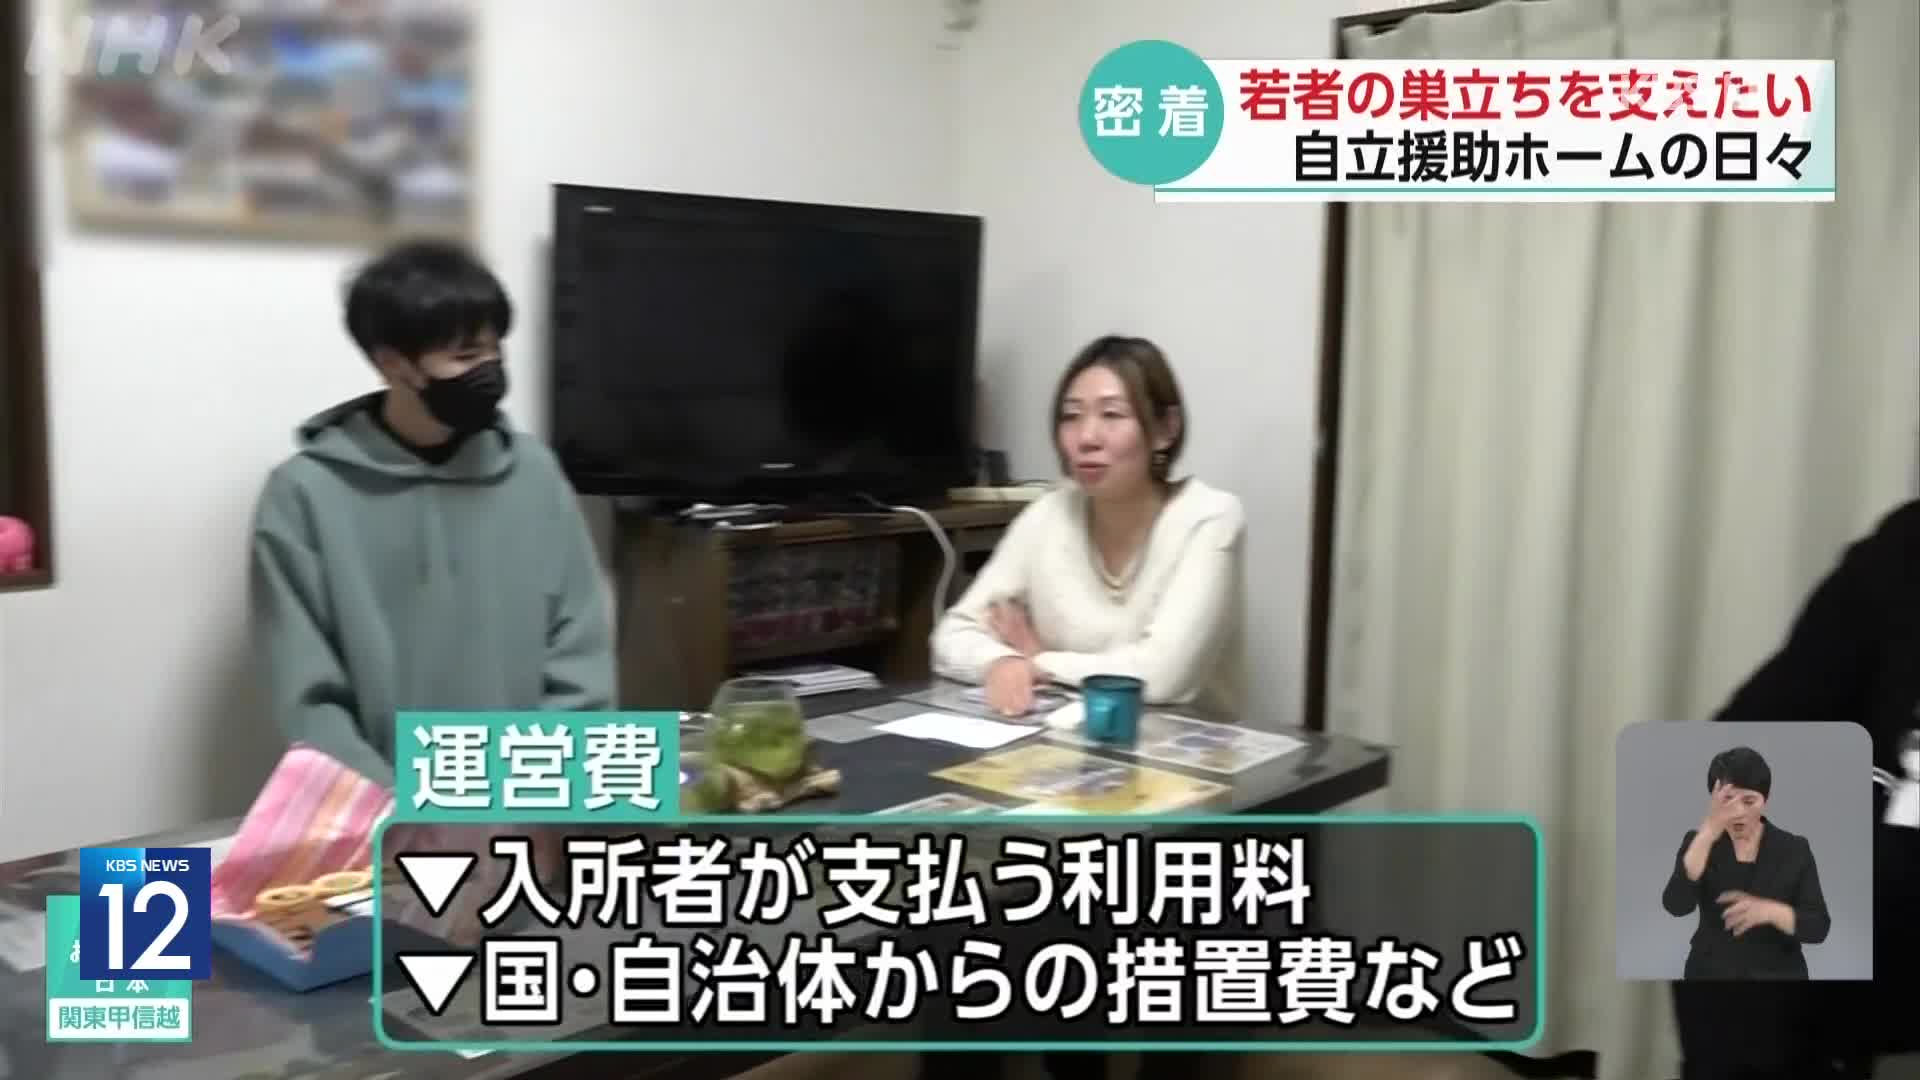 일본 보호 시설에서 자립 준비하는 청소년들